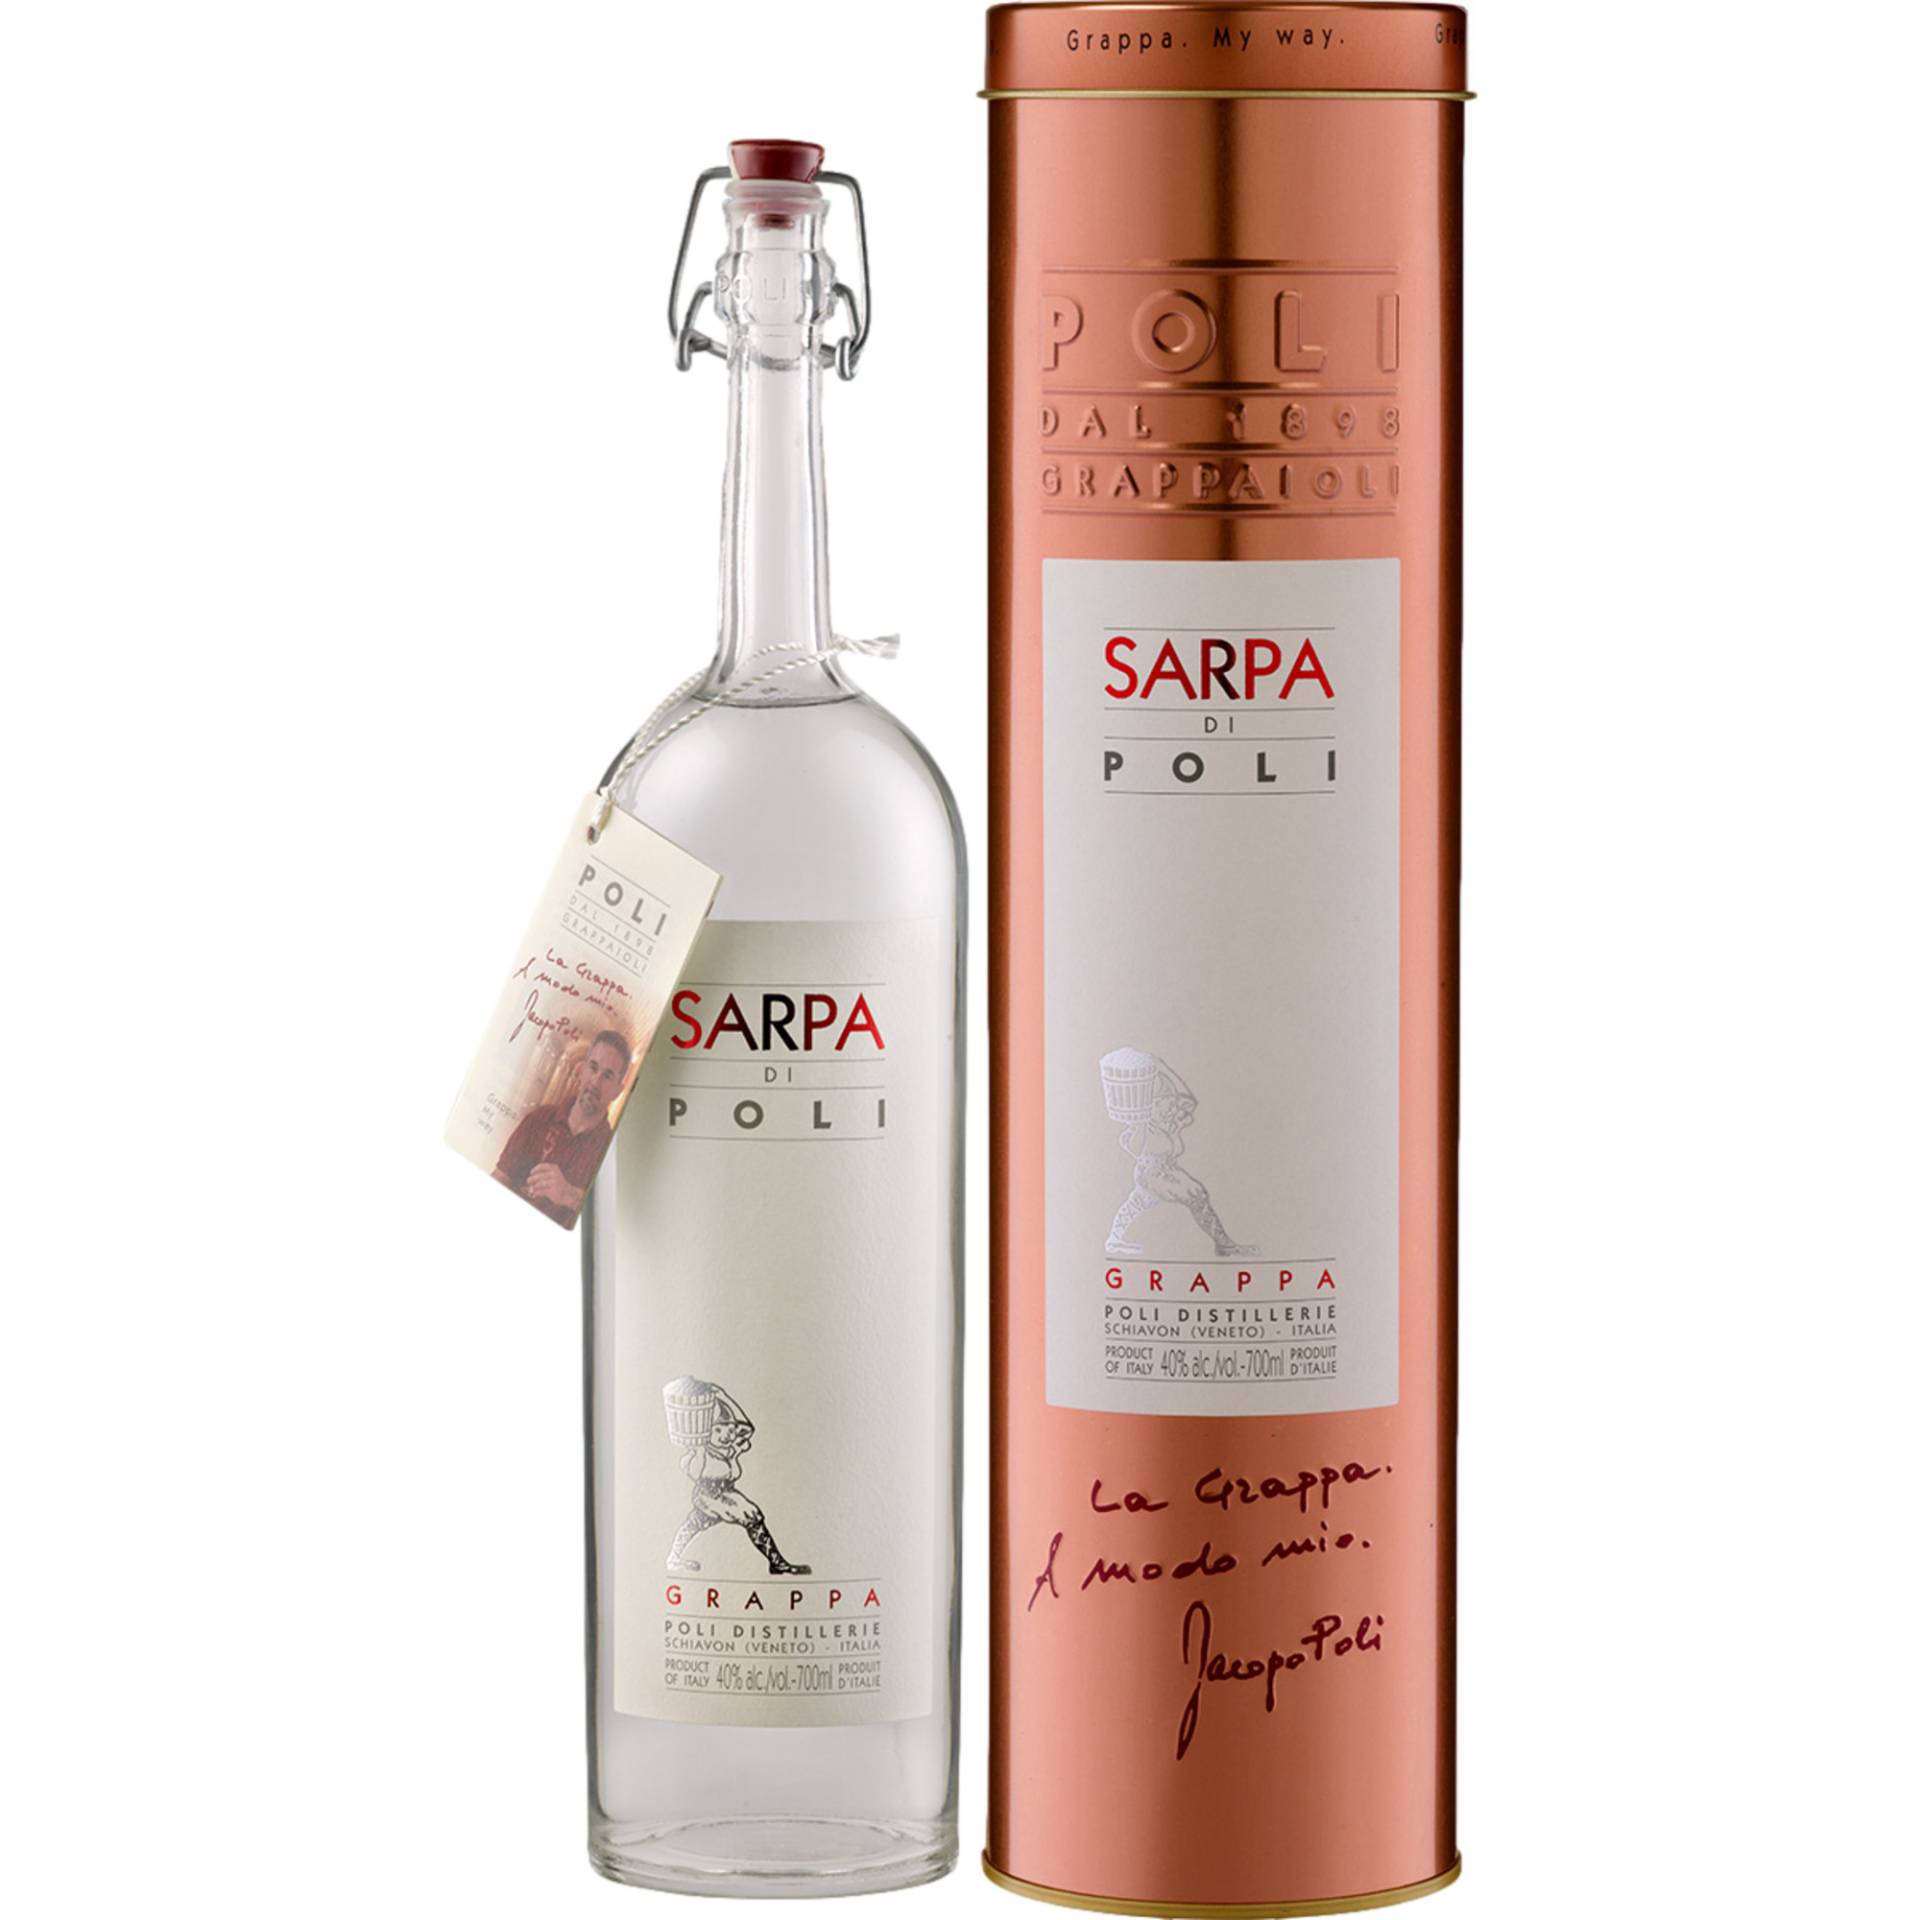 Grappa Sarpa di Poli, 0,7 L, 40% Vol, Venetien, Spirituosen von Jacopo Poli Distillerie srl, IT 36060 Schiavon (VI)